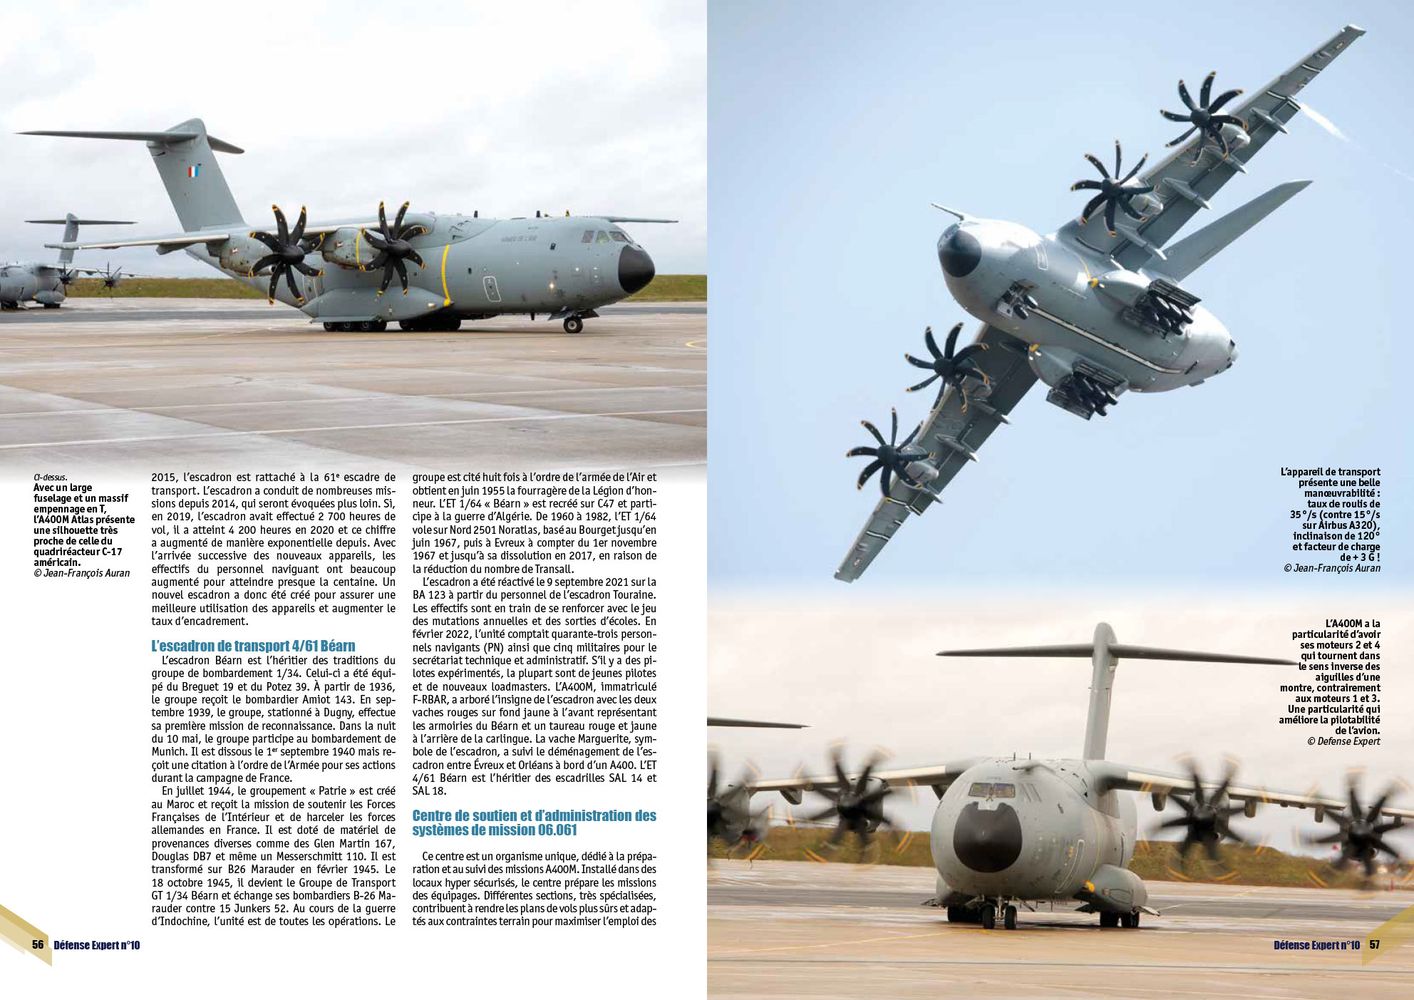 A400 M Atlas - L’escadron 4-61 Béarn reprend du service - page 56 & 57 DE n°10